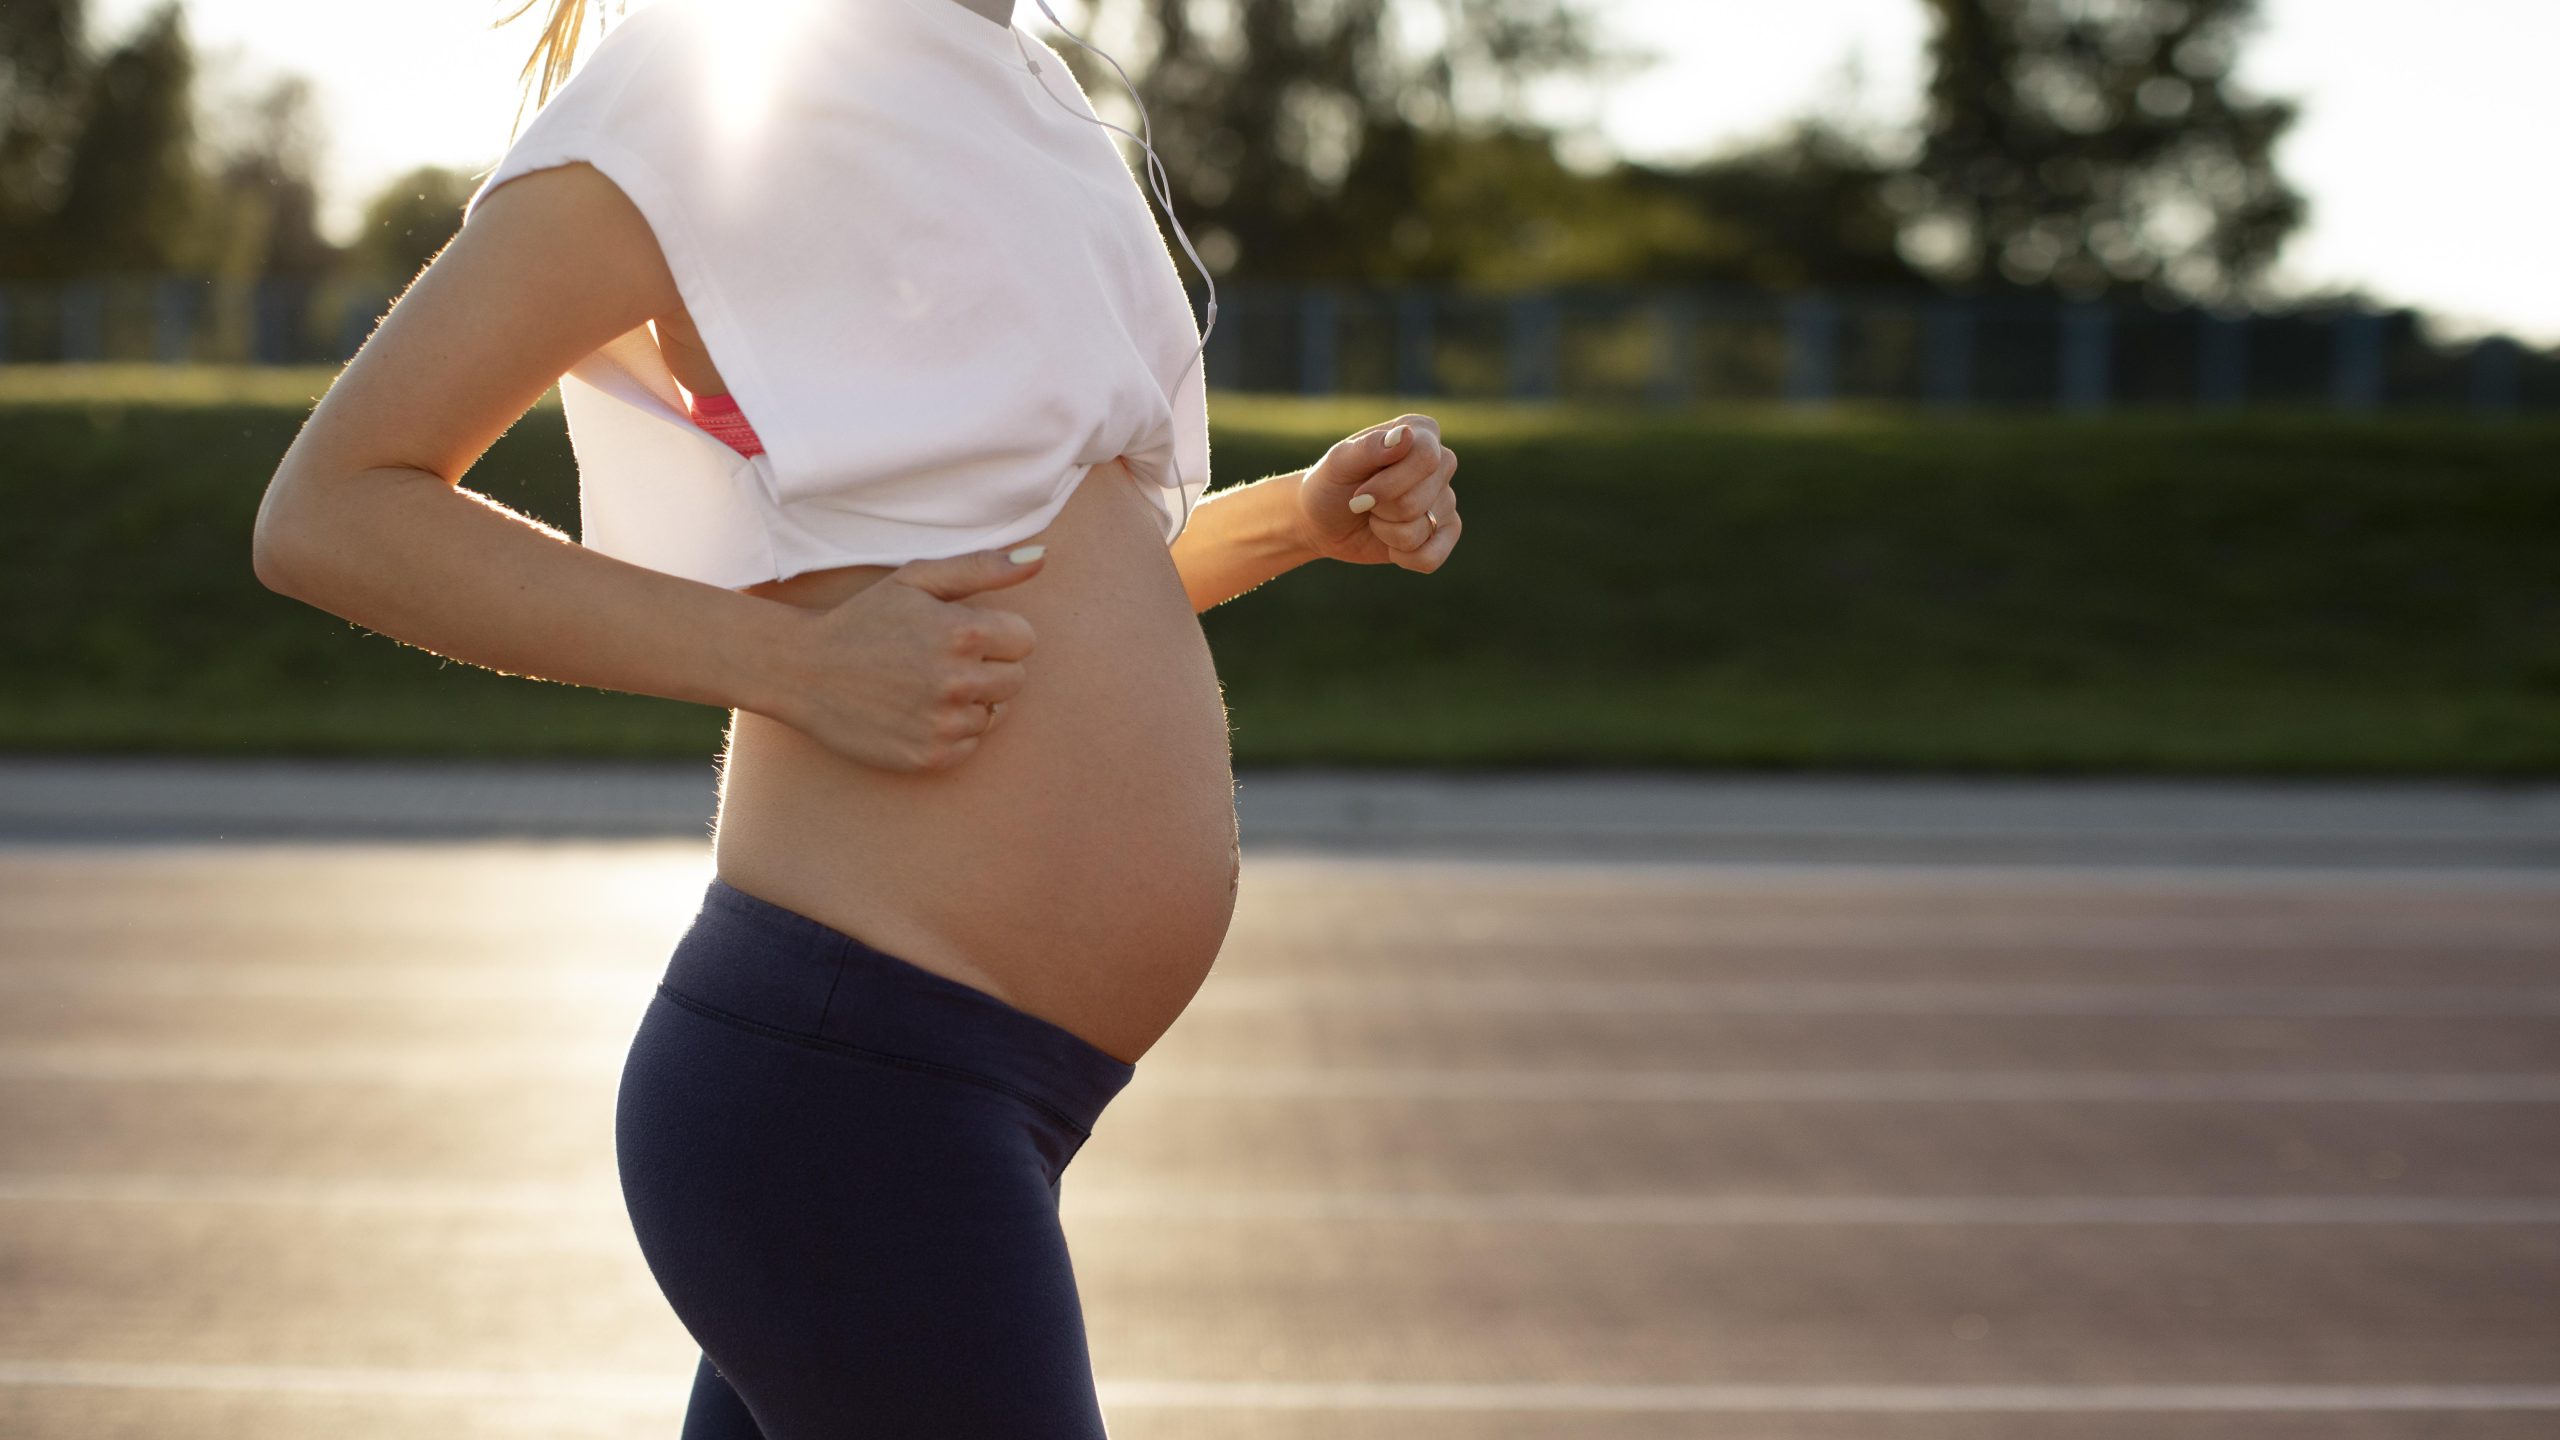 Balançar muito a barriga na gravidez faz mal? Entenda os riscos e cuidados necessários